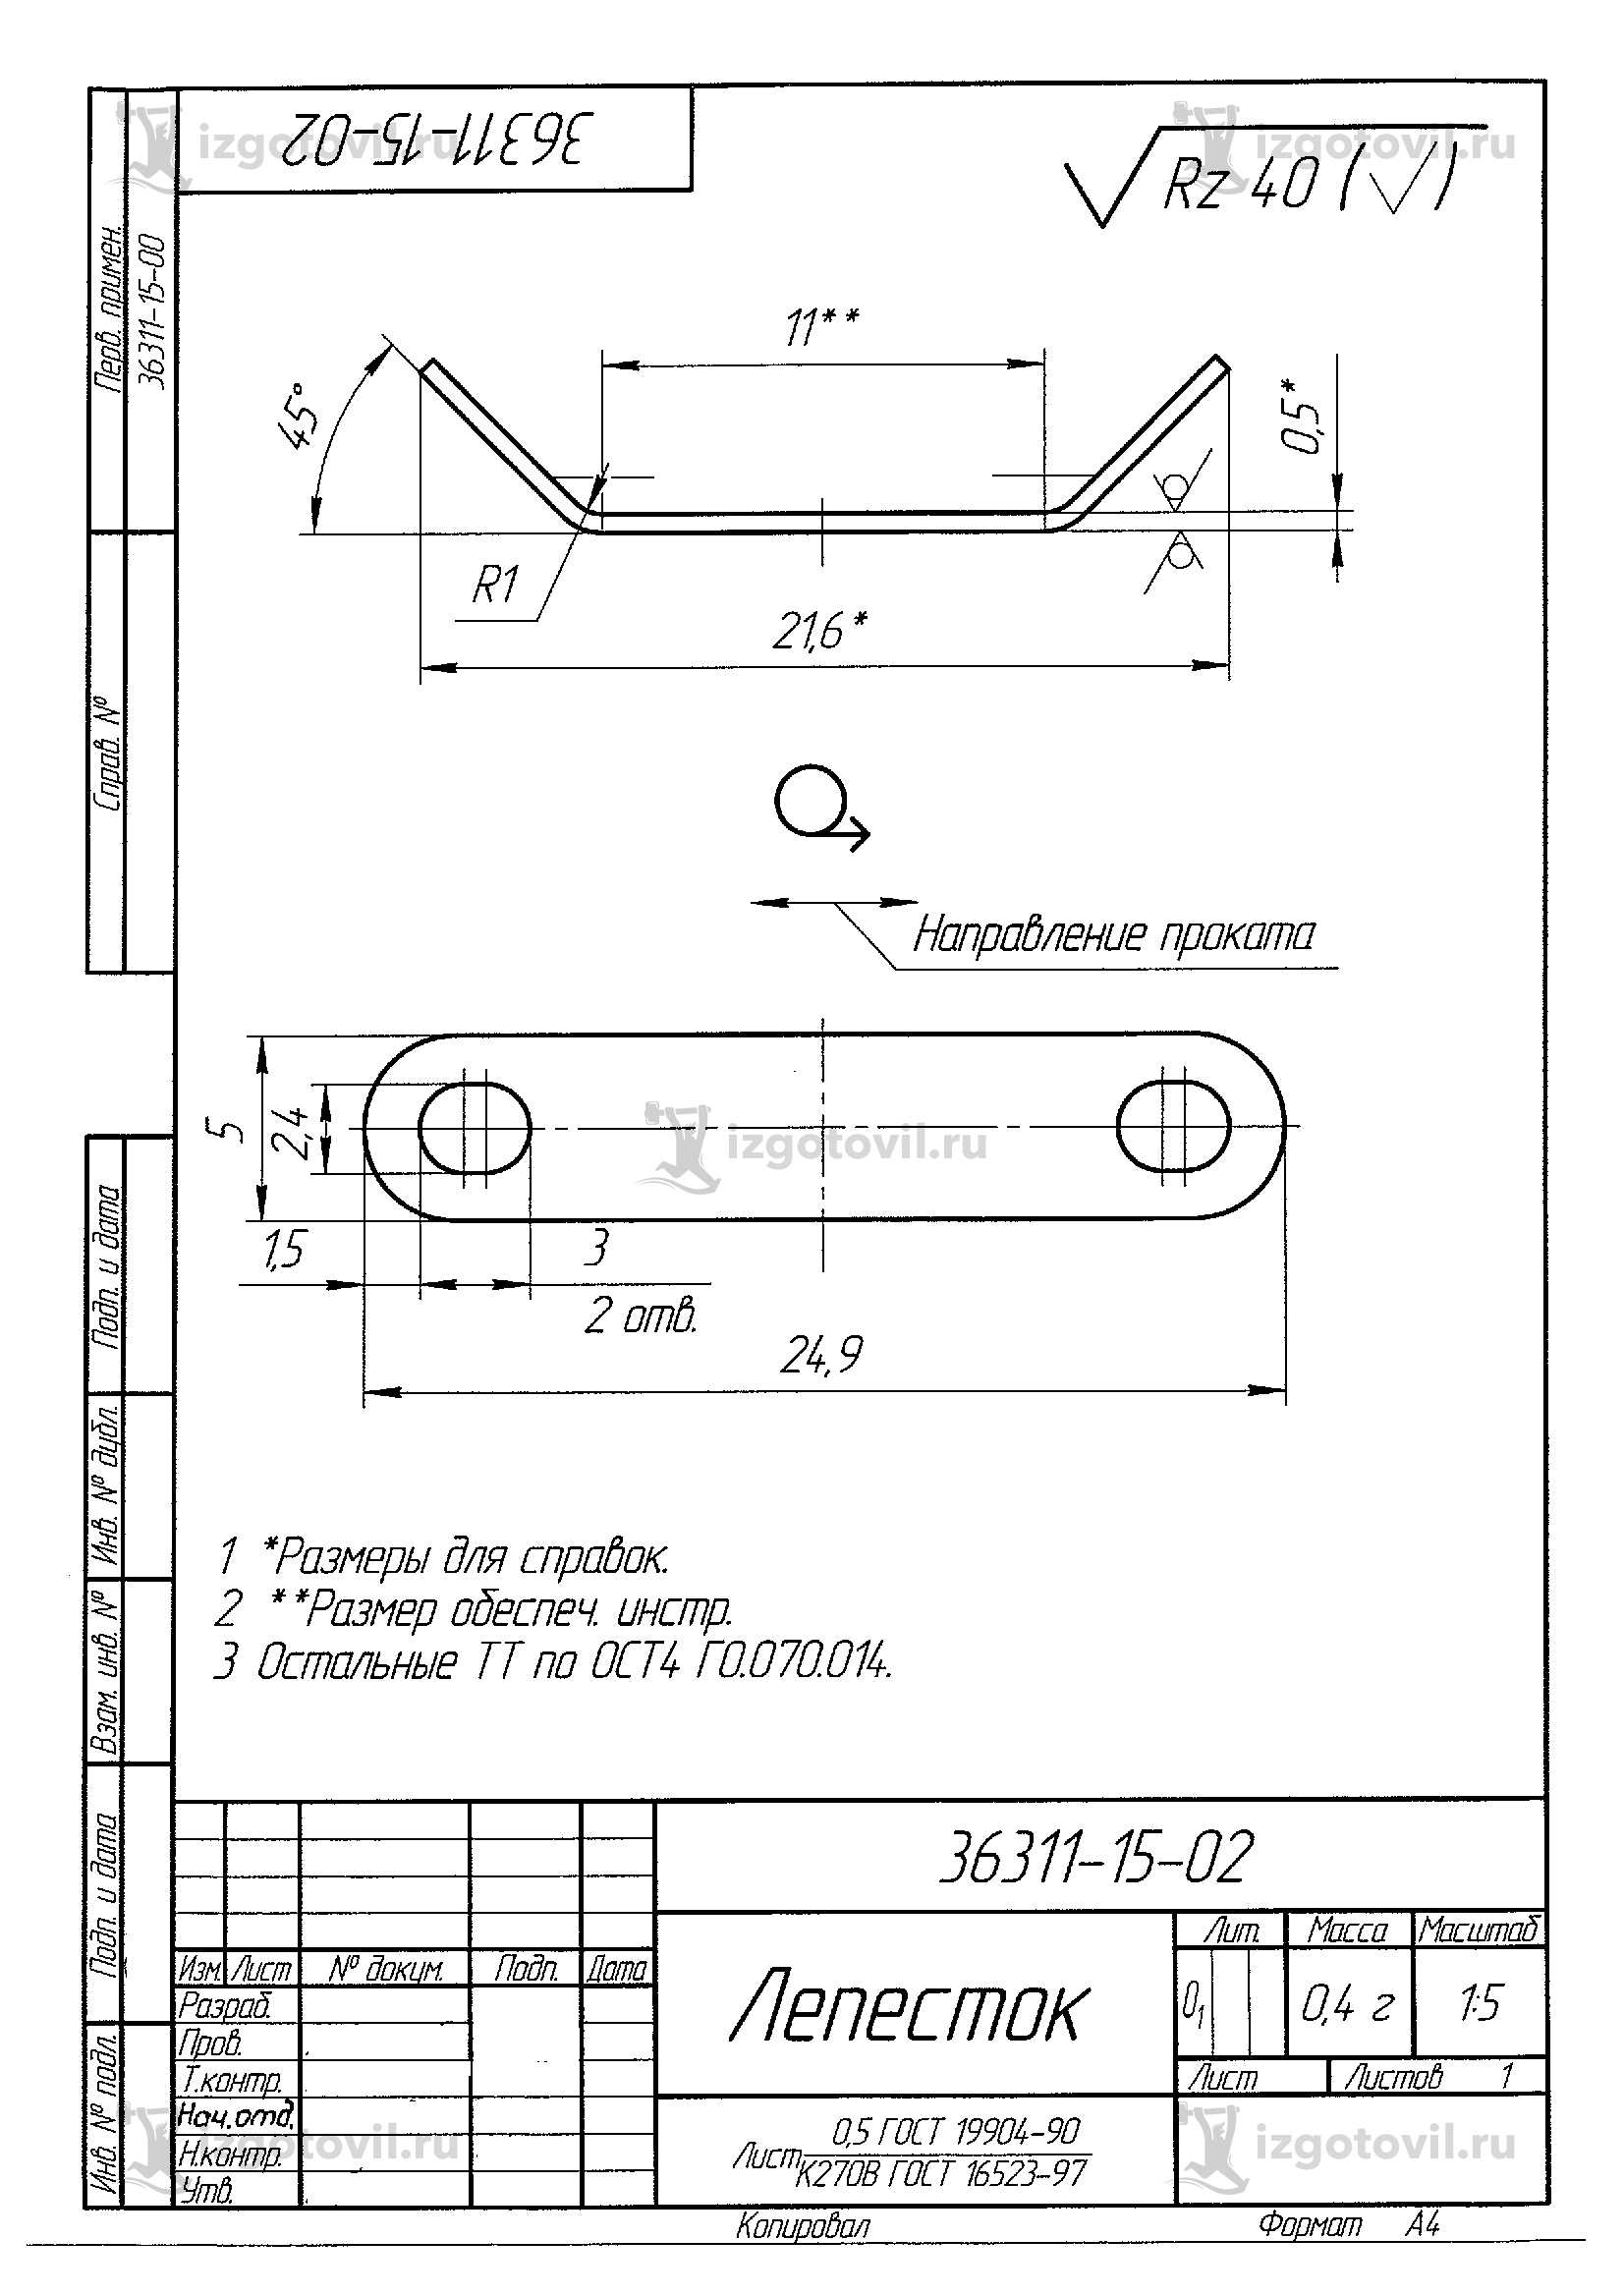 Металлообработка: изготовление кронштейны, корпус, крышки и панели.